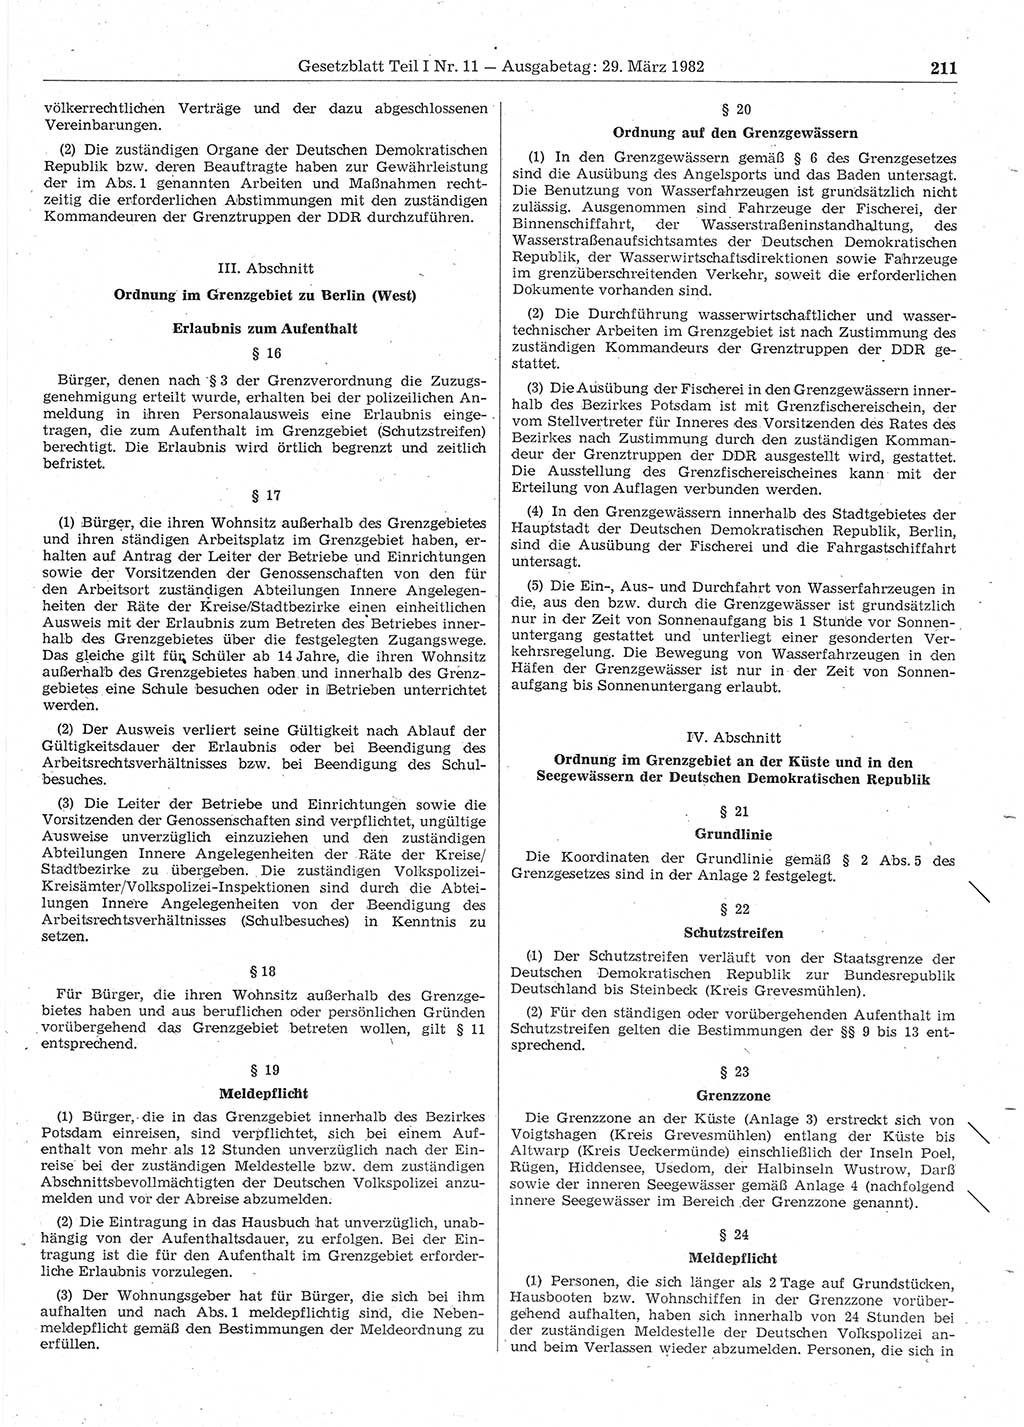 Gesetzblatt (GBl.) der Deutschen Demokratischen Republik (DDR) Teil Ⅰ 1982, Seite 211 (GBl. DDR Ⅰ 1982, S. 211)